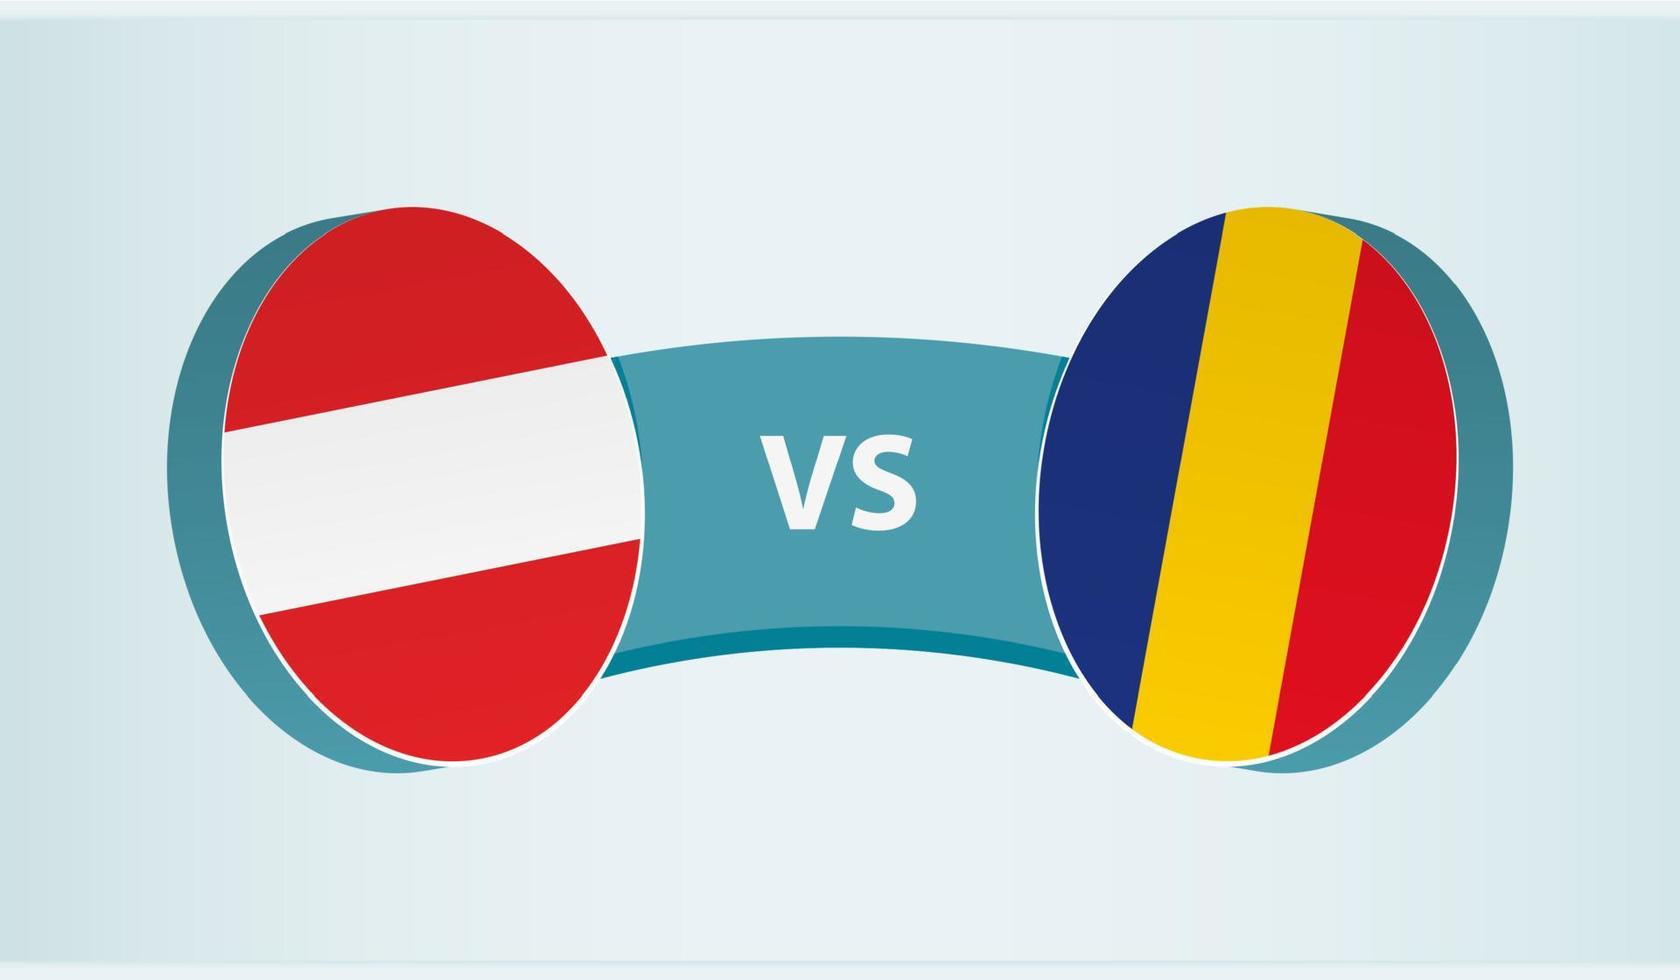 Austria versus Romania, team sports competition concept. vector